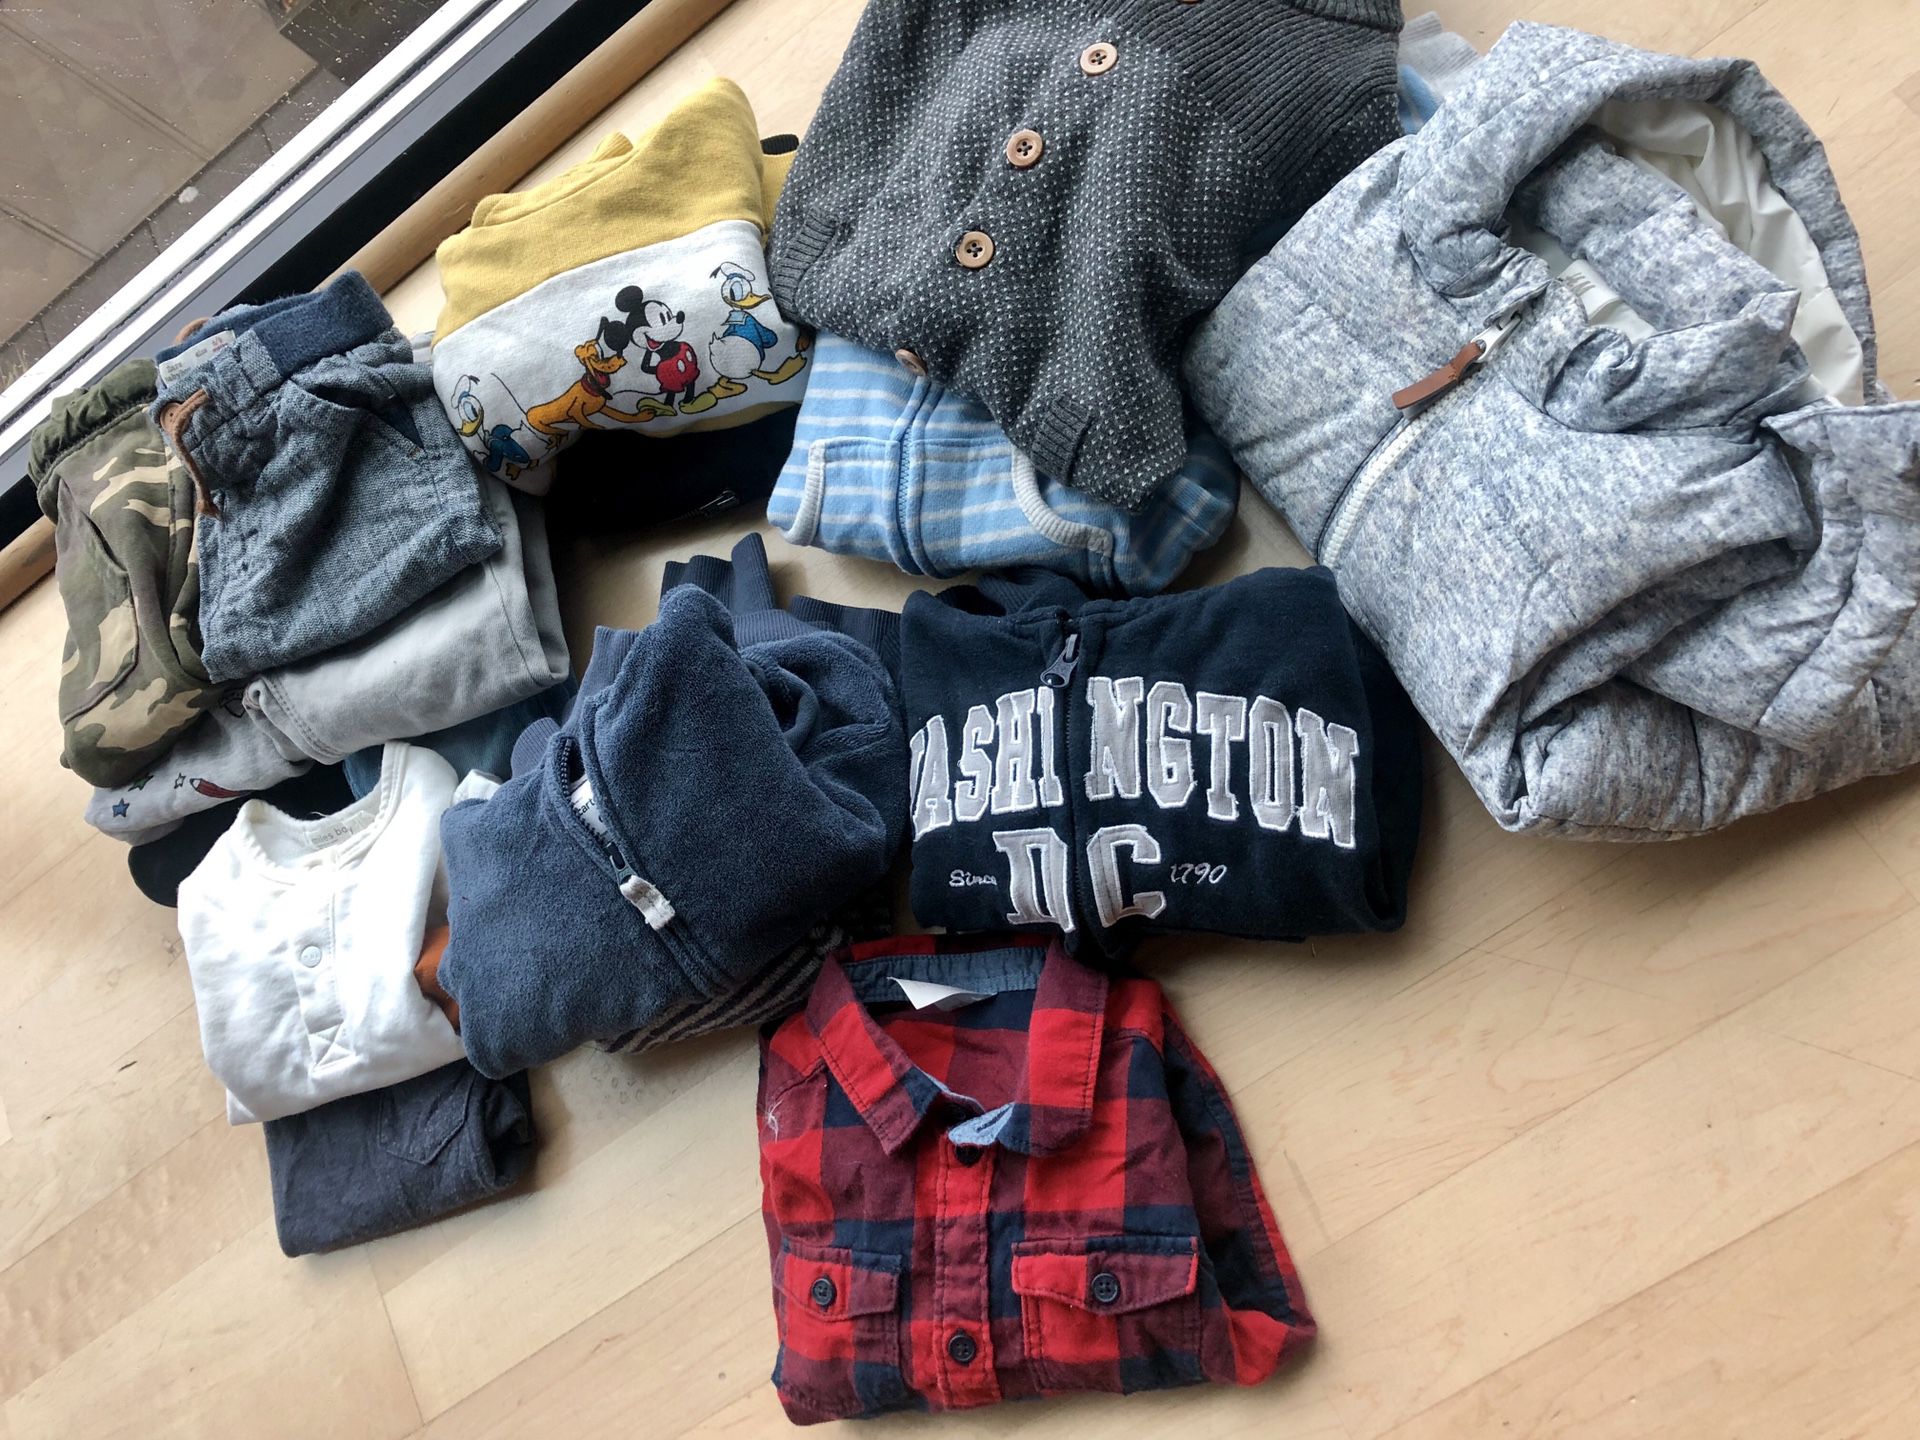 Baby clothes bundle